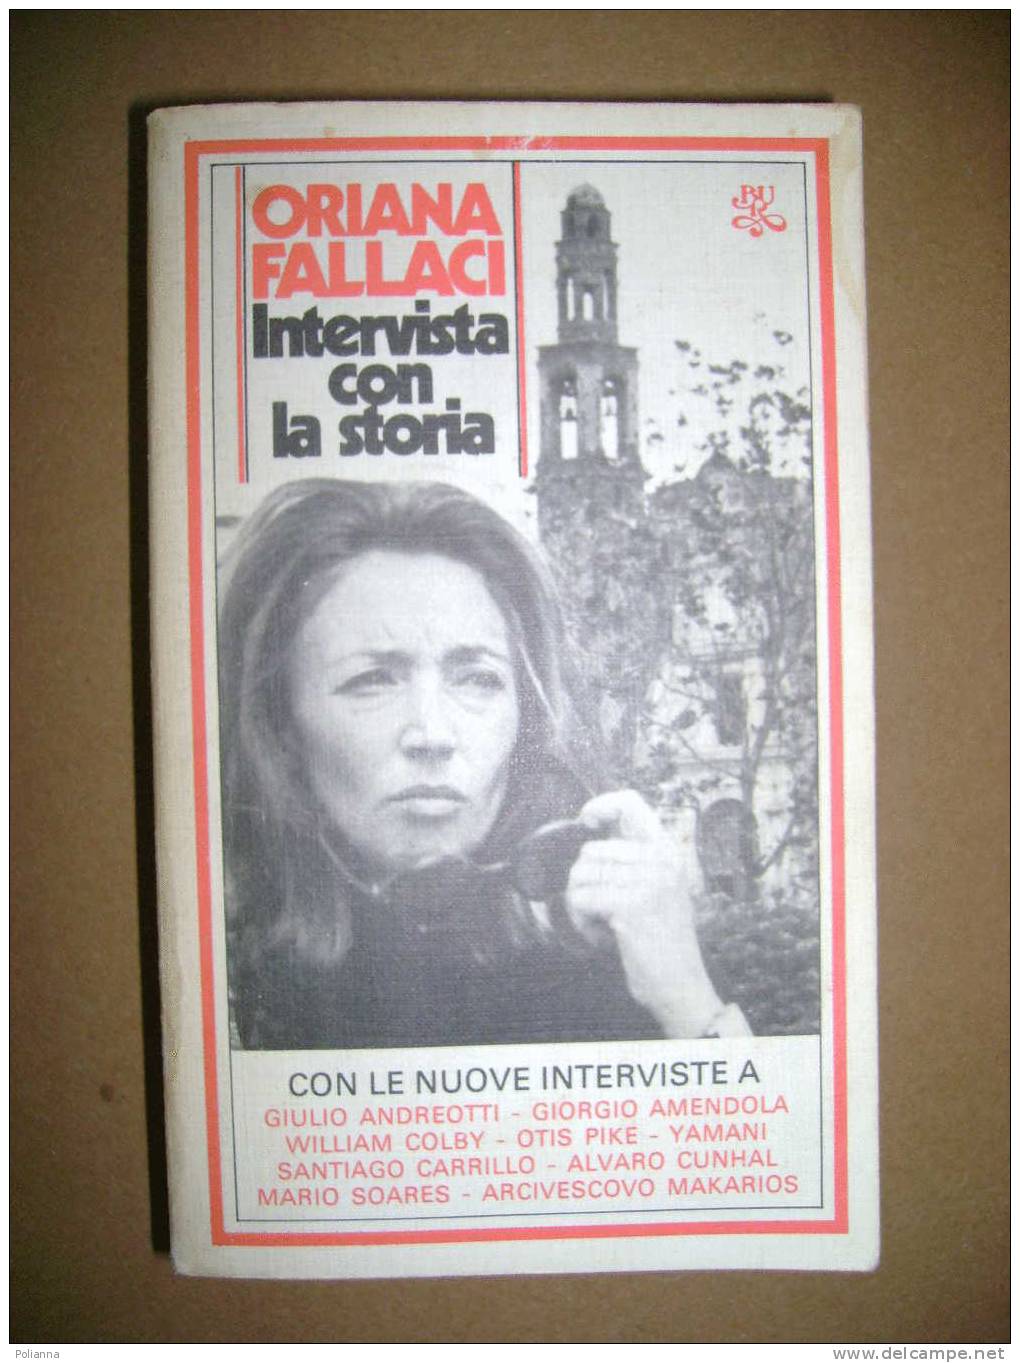 PAC/20 Oriana Fallaci INTERVISTA CON LA STORIA Bur Rizzoli 1980 - Journalistiek